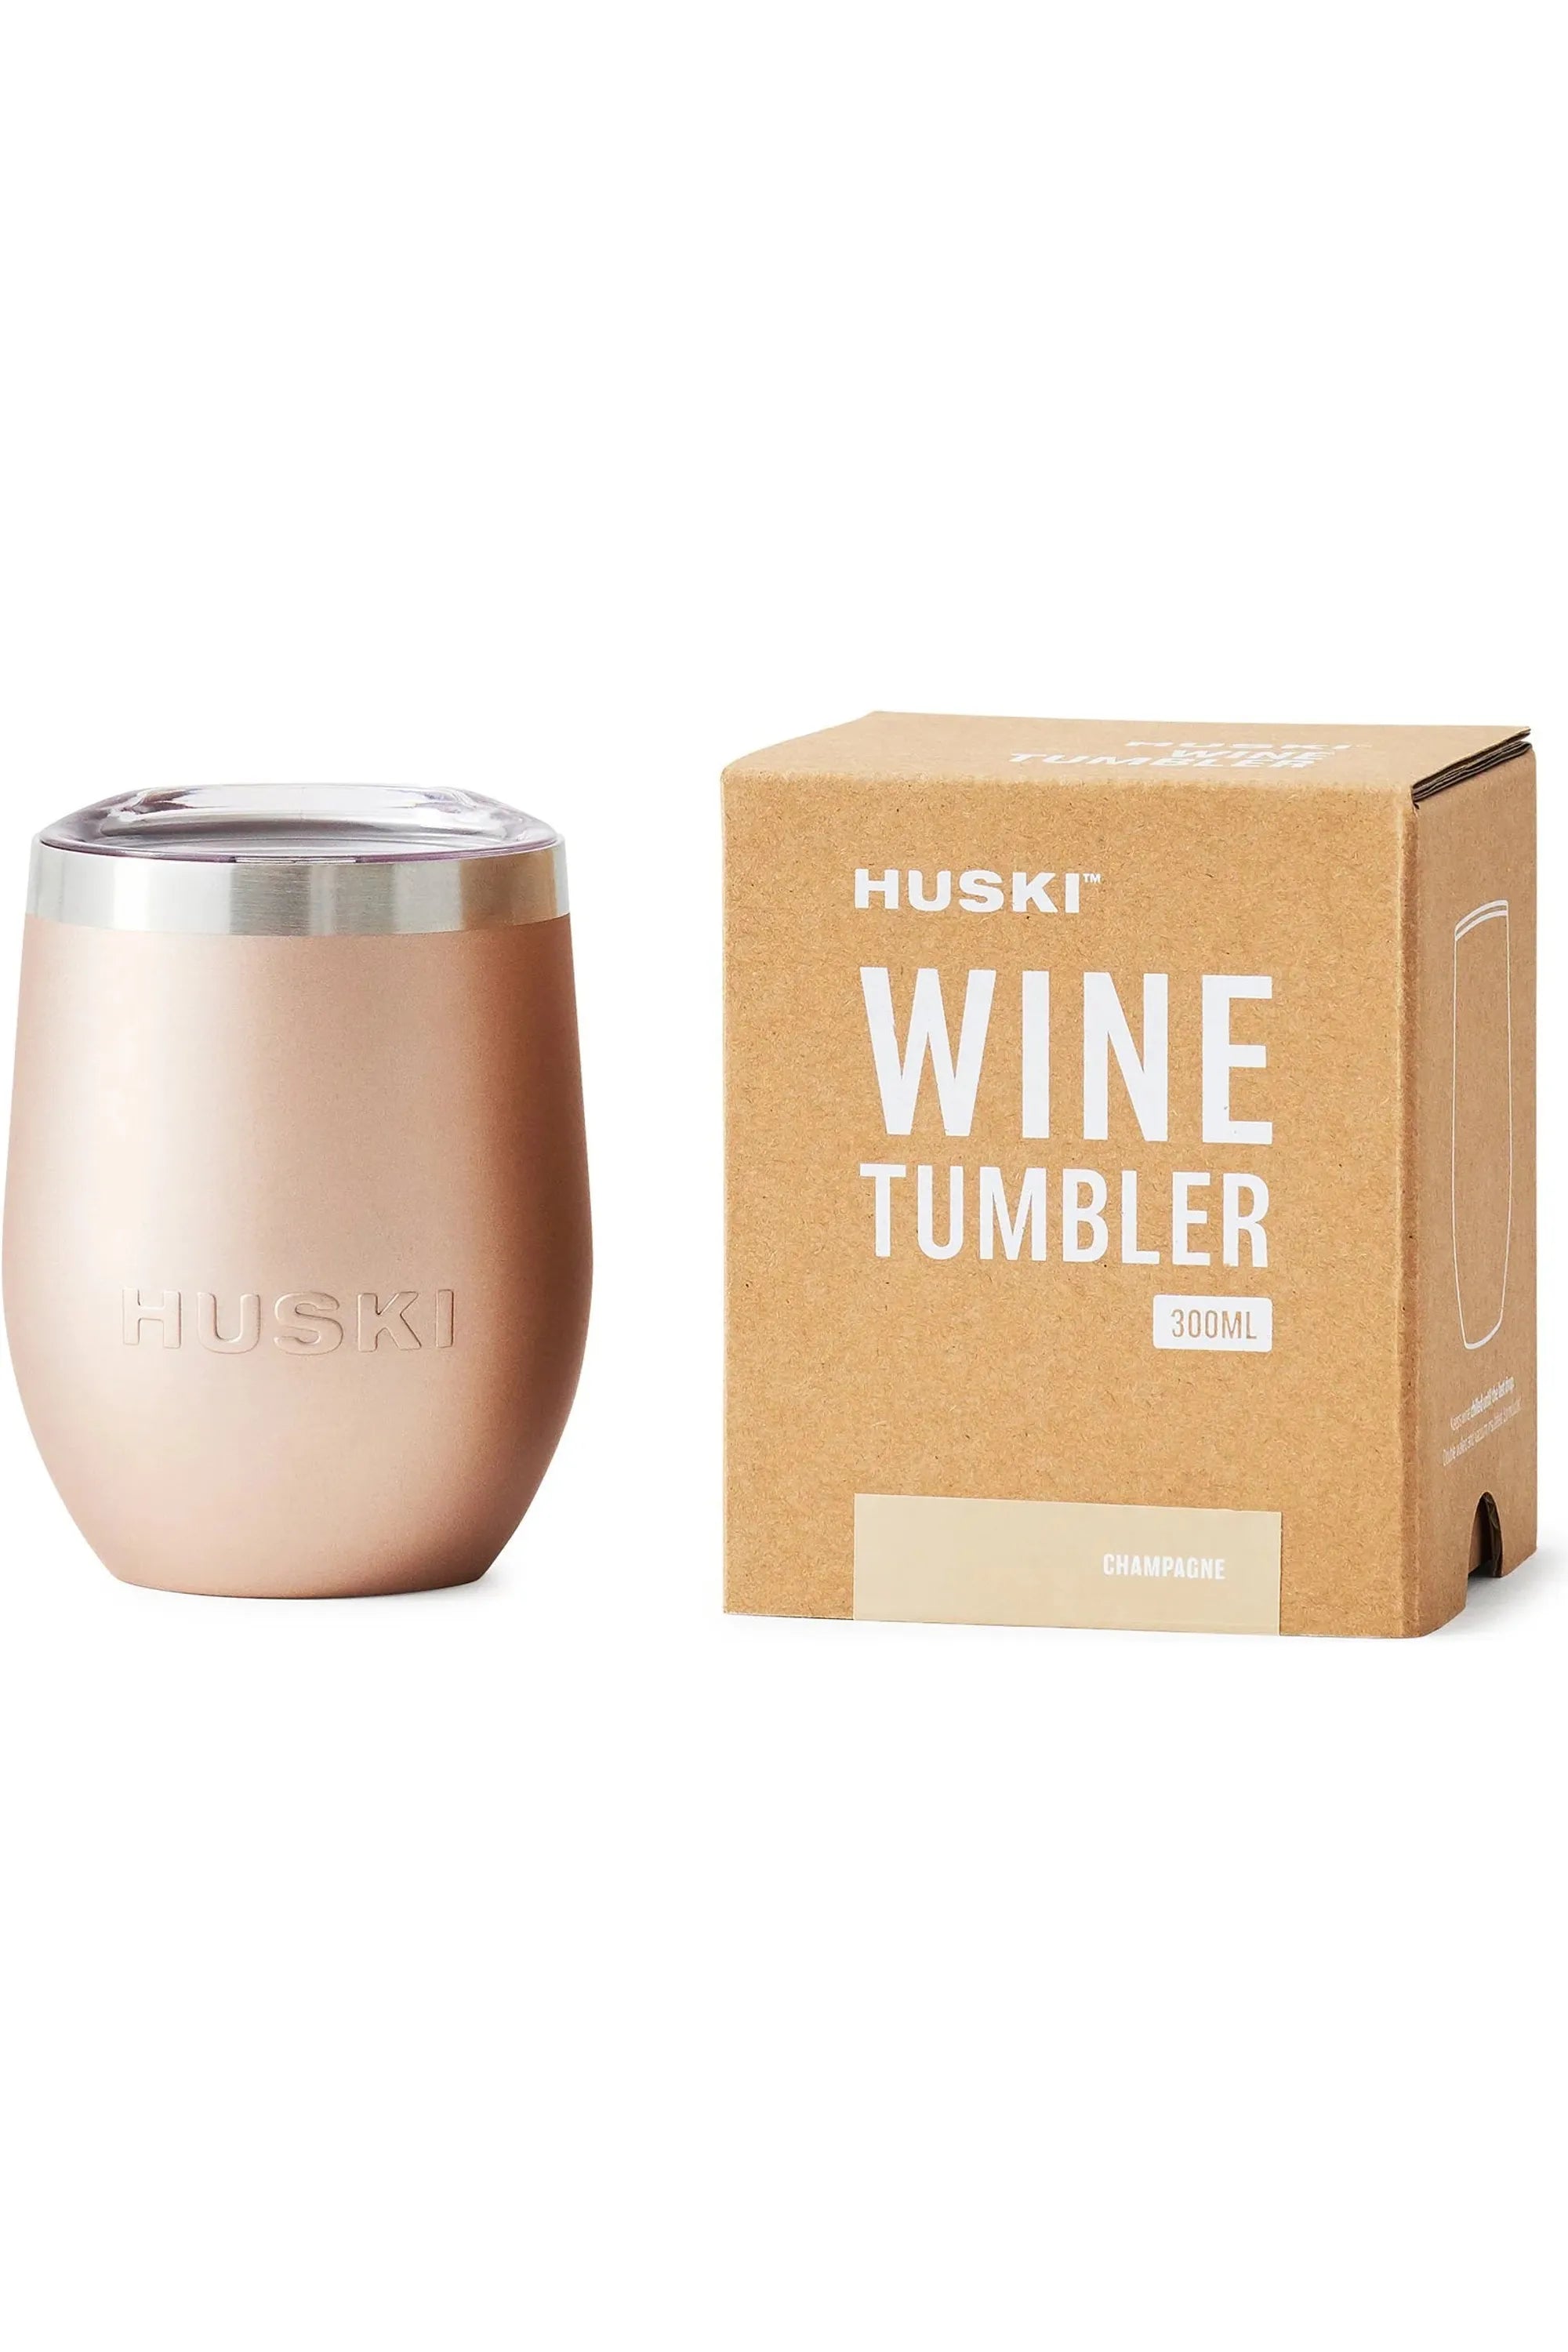 HUSKI Wine Tumbler - Champagne